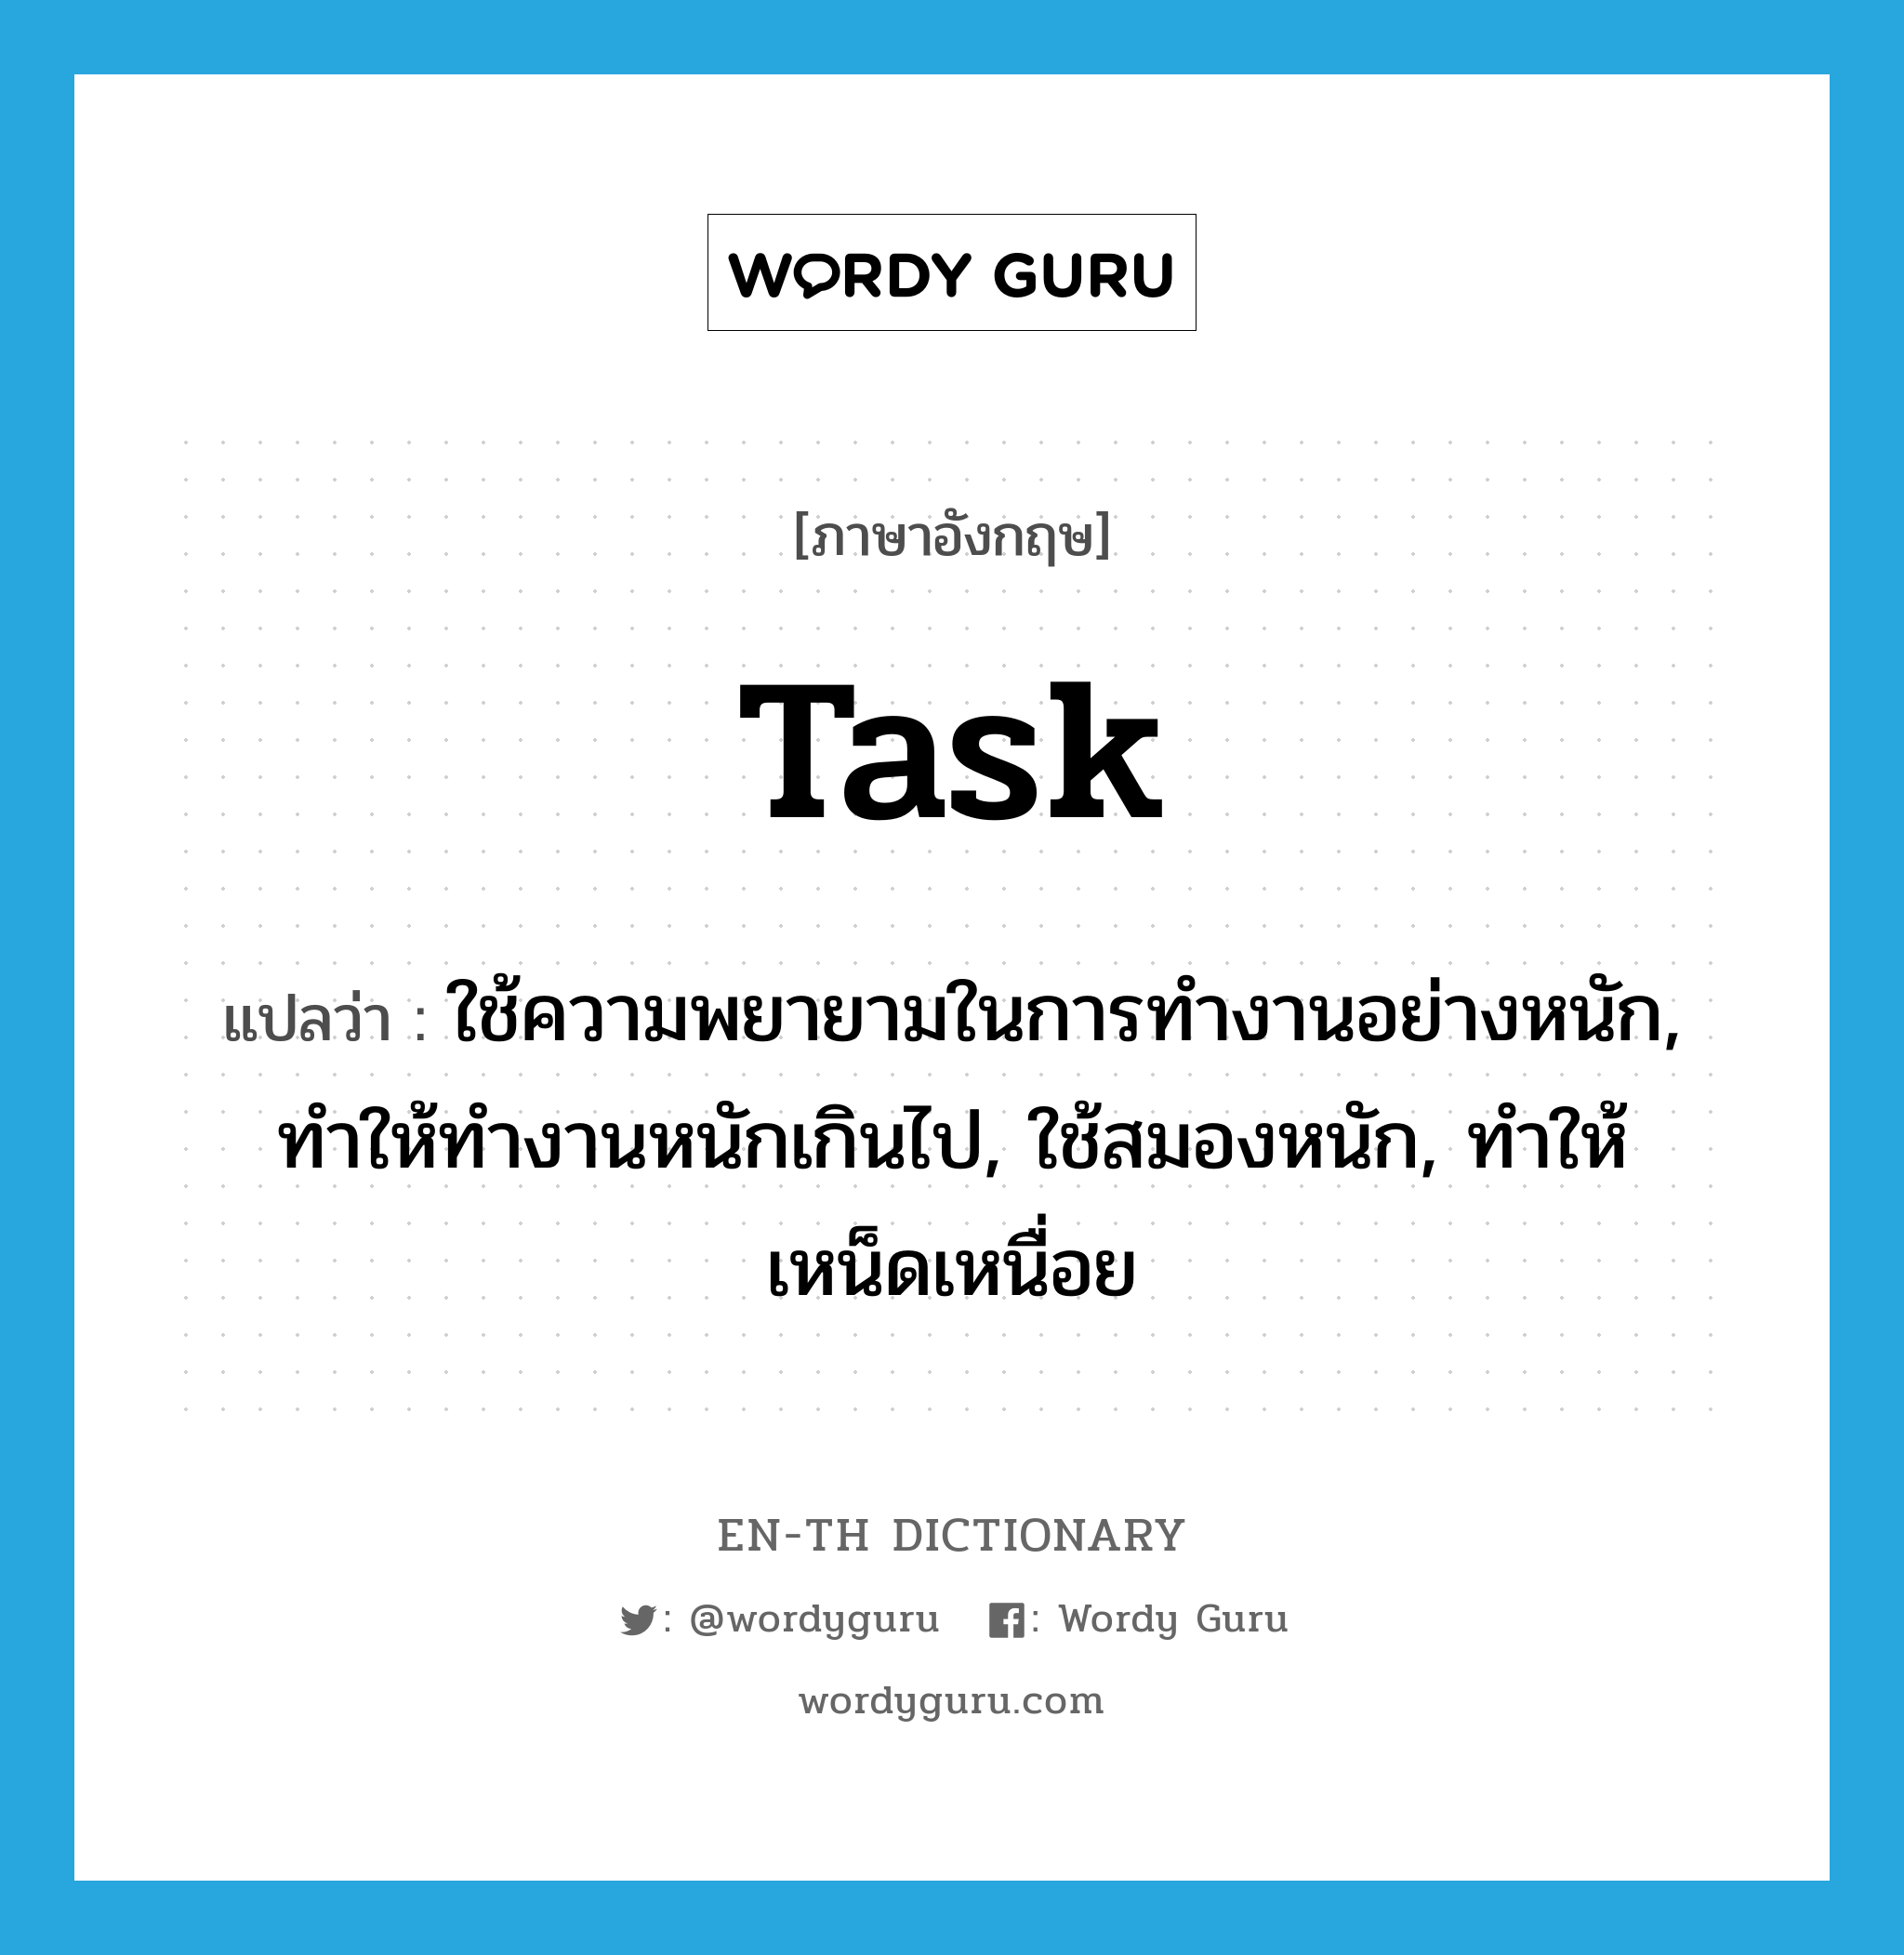 task แปลว่า?, คำศัพท์ภาษาอังกฤษ task แปลว่า ใช้ความพยายามในการทำงานอย่างหนัก, ทำให้ทำงานหนักเกินไป, ใช้สมองหนัก, ทำให้เหน็ดเหนื่อย ประเภท VT หมวด VT